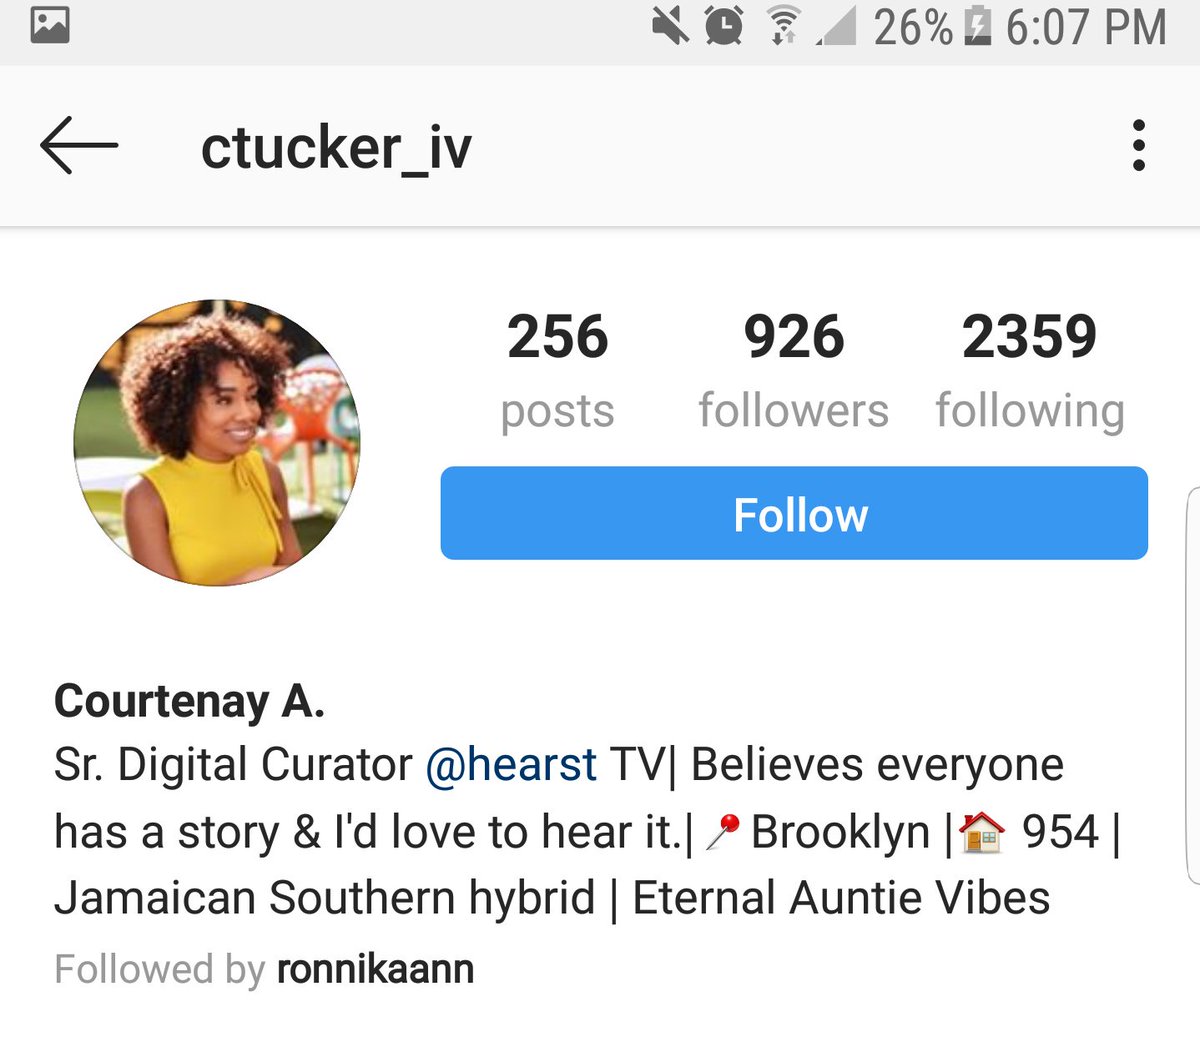 Courtenay A. IG: Ctucker_ivSr. Digital curator at Hearst TV